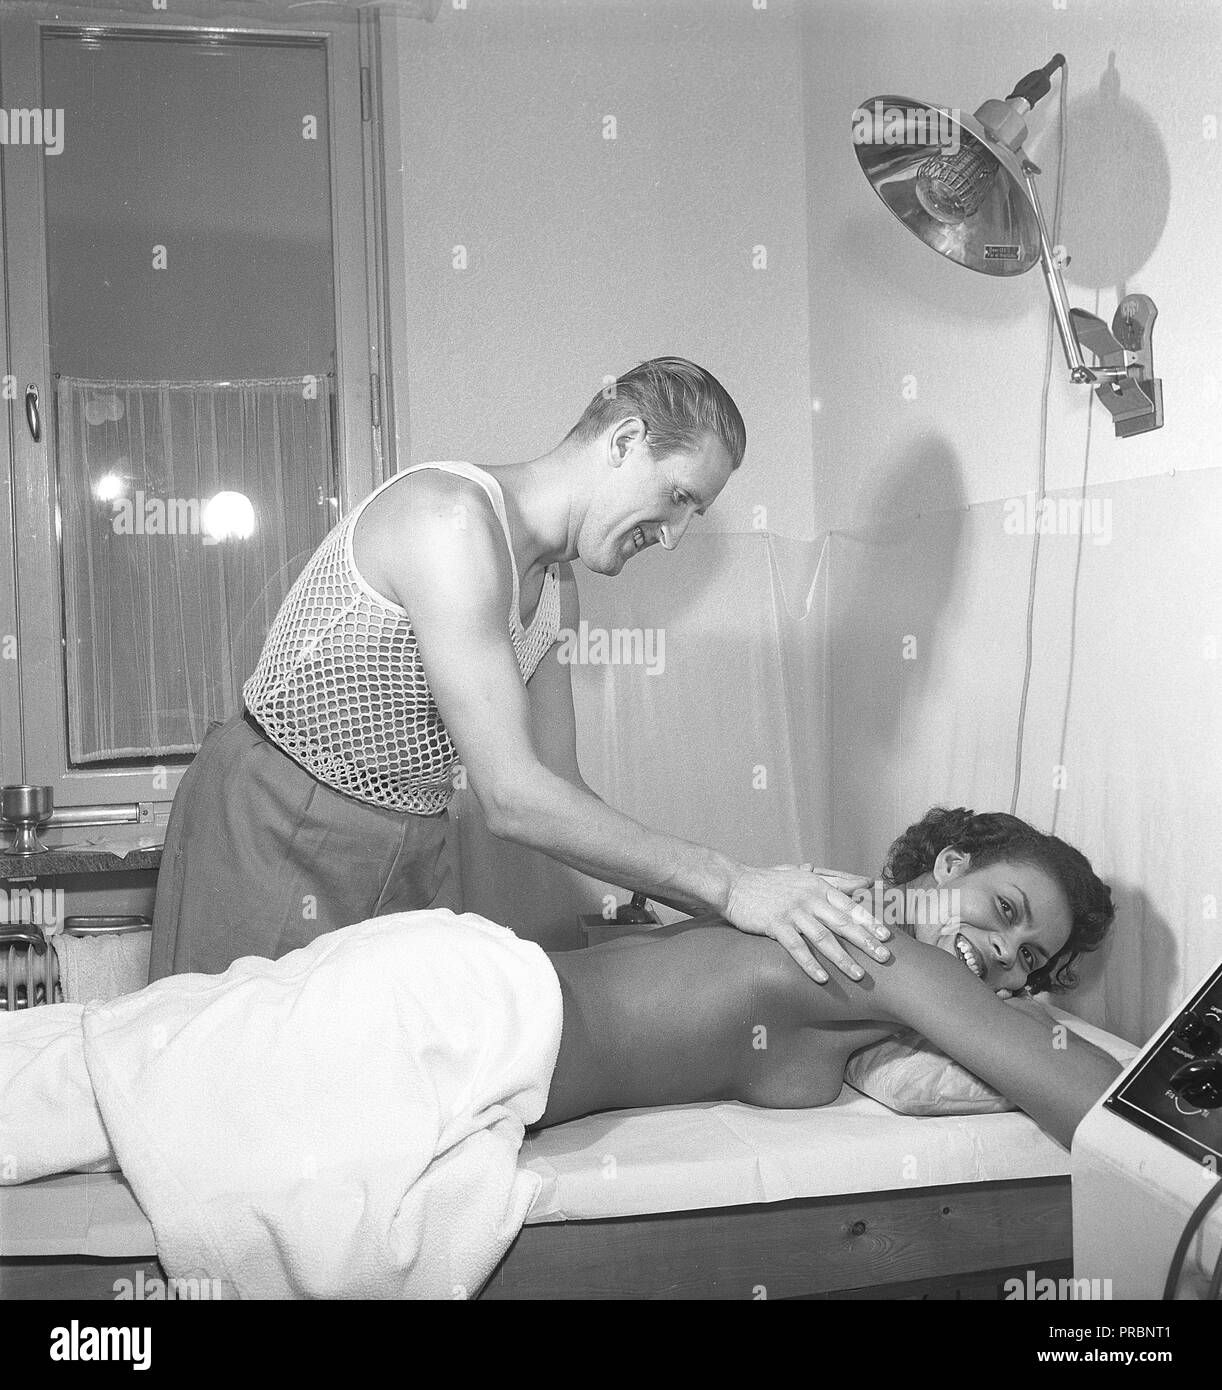 Soins de beauté dans les années 1950. Une jeune femme est d'avoir un massage par un homme de la manipulation du traitement. Il porte la sorte très spéciale de t-shirt avec le tricot comme un filet, principalement pour être utilisée sous votre chemise. Suède 1951. Kristoffersson Photo Ref ÊTRE103-3 Banque D'Images